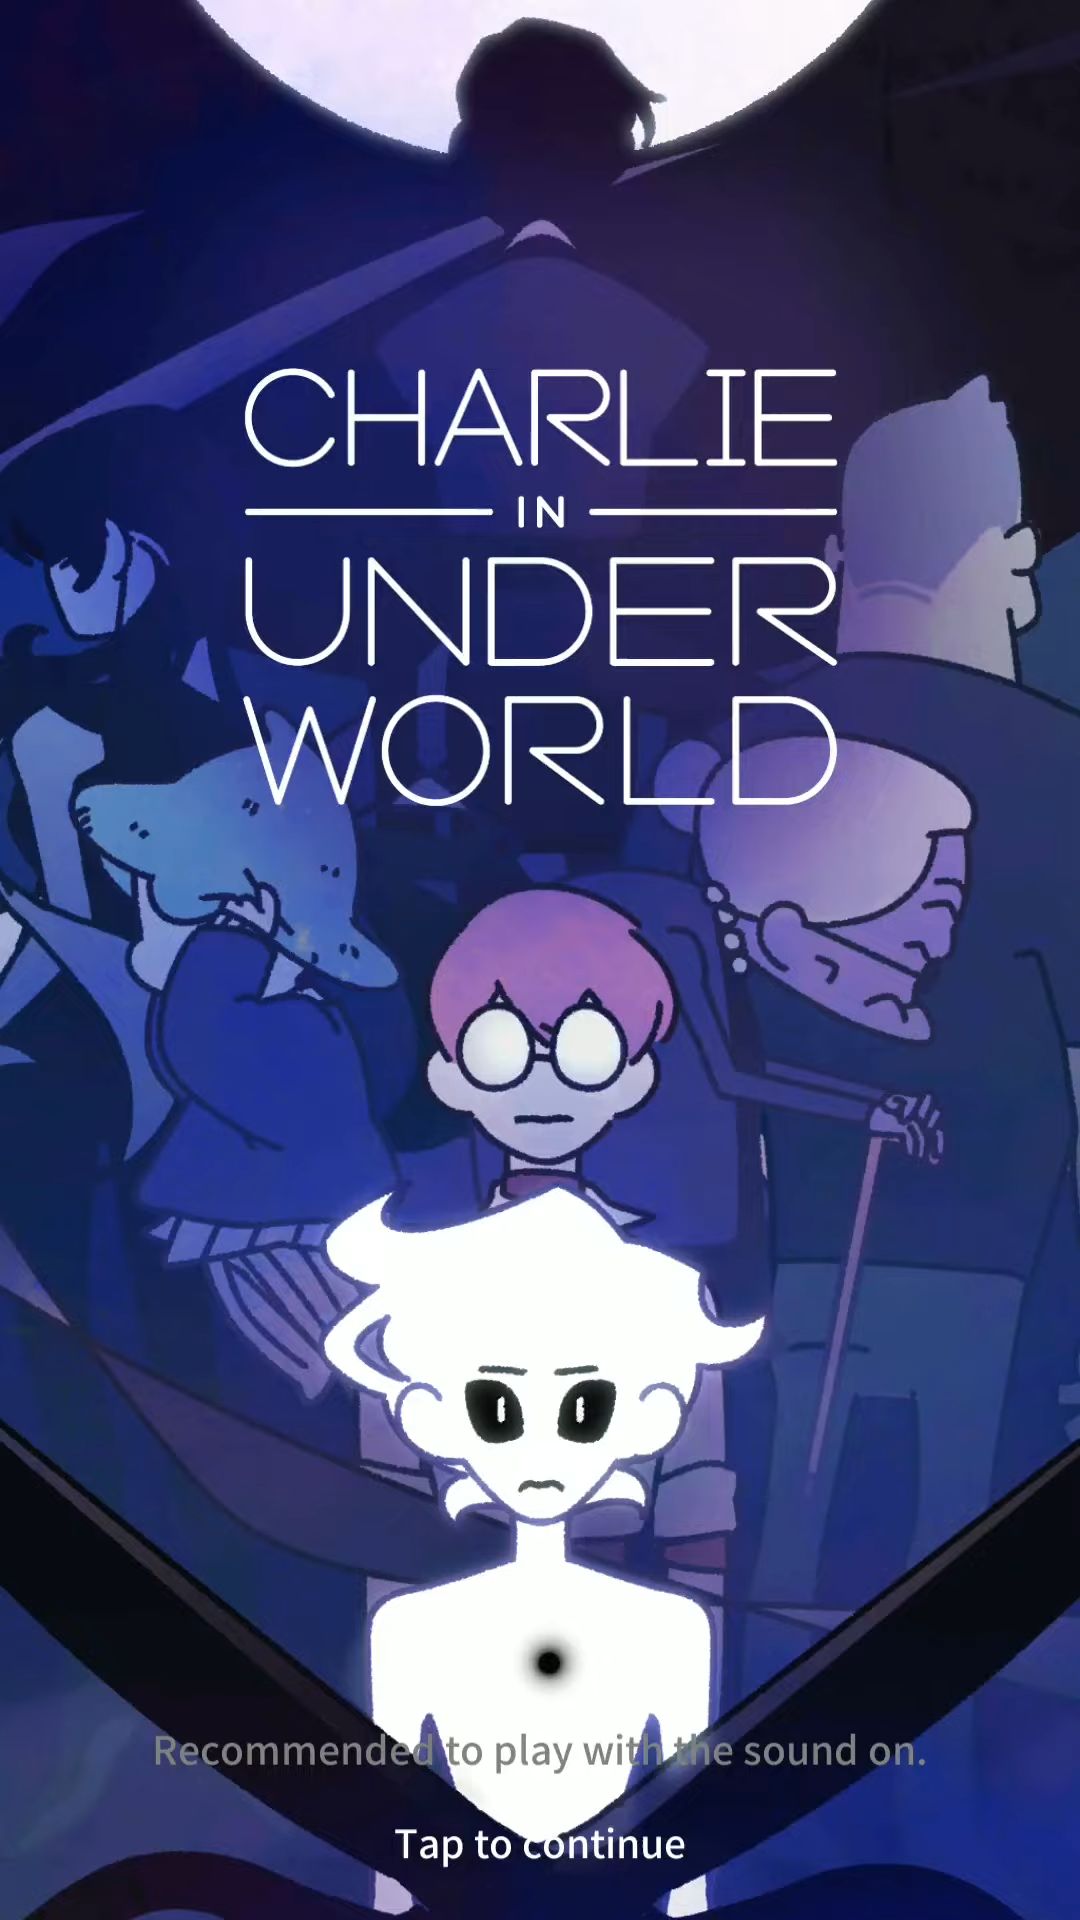 Download Charlie in Underworld! für Android kostenlos.